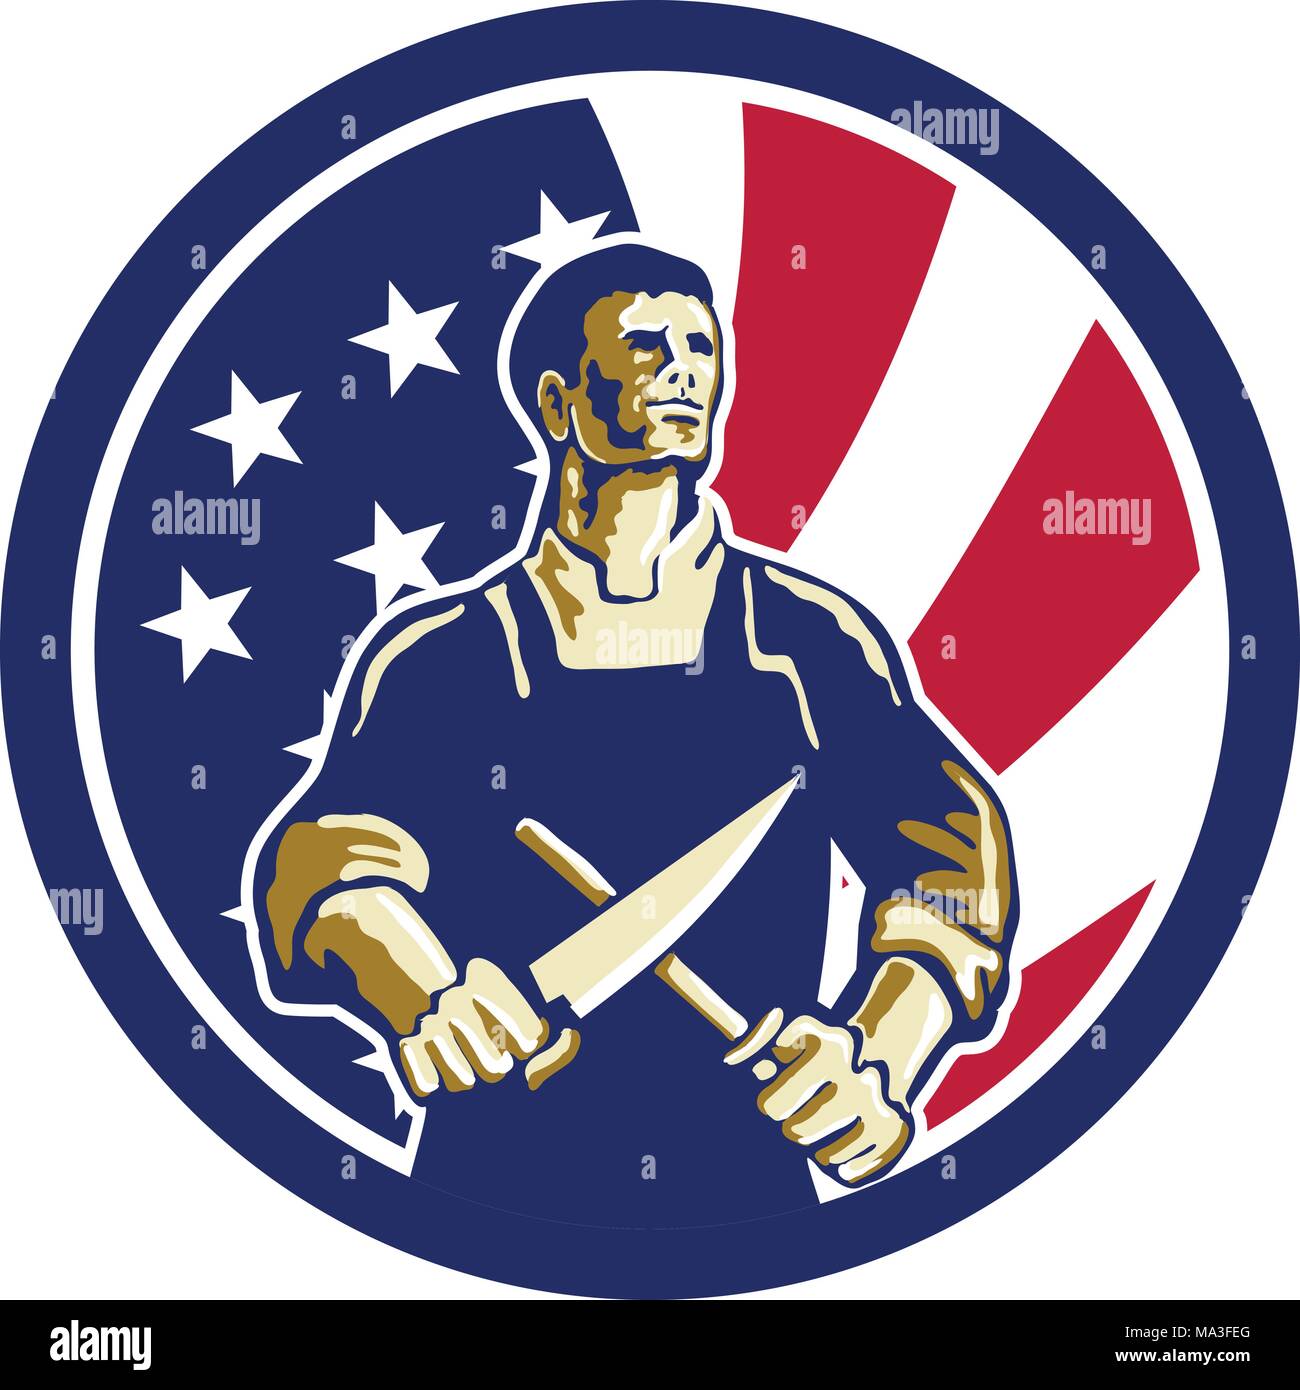 Symbol Retro Stil Abbildung eines amerikanischen Metzger Schärfen der Messer von vorne gesehen mit den Vereinigten Staaten von Amerika USA Star Spangled Banner. Stock Vektor